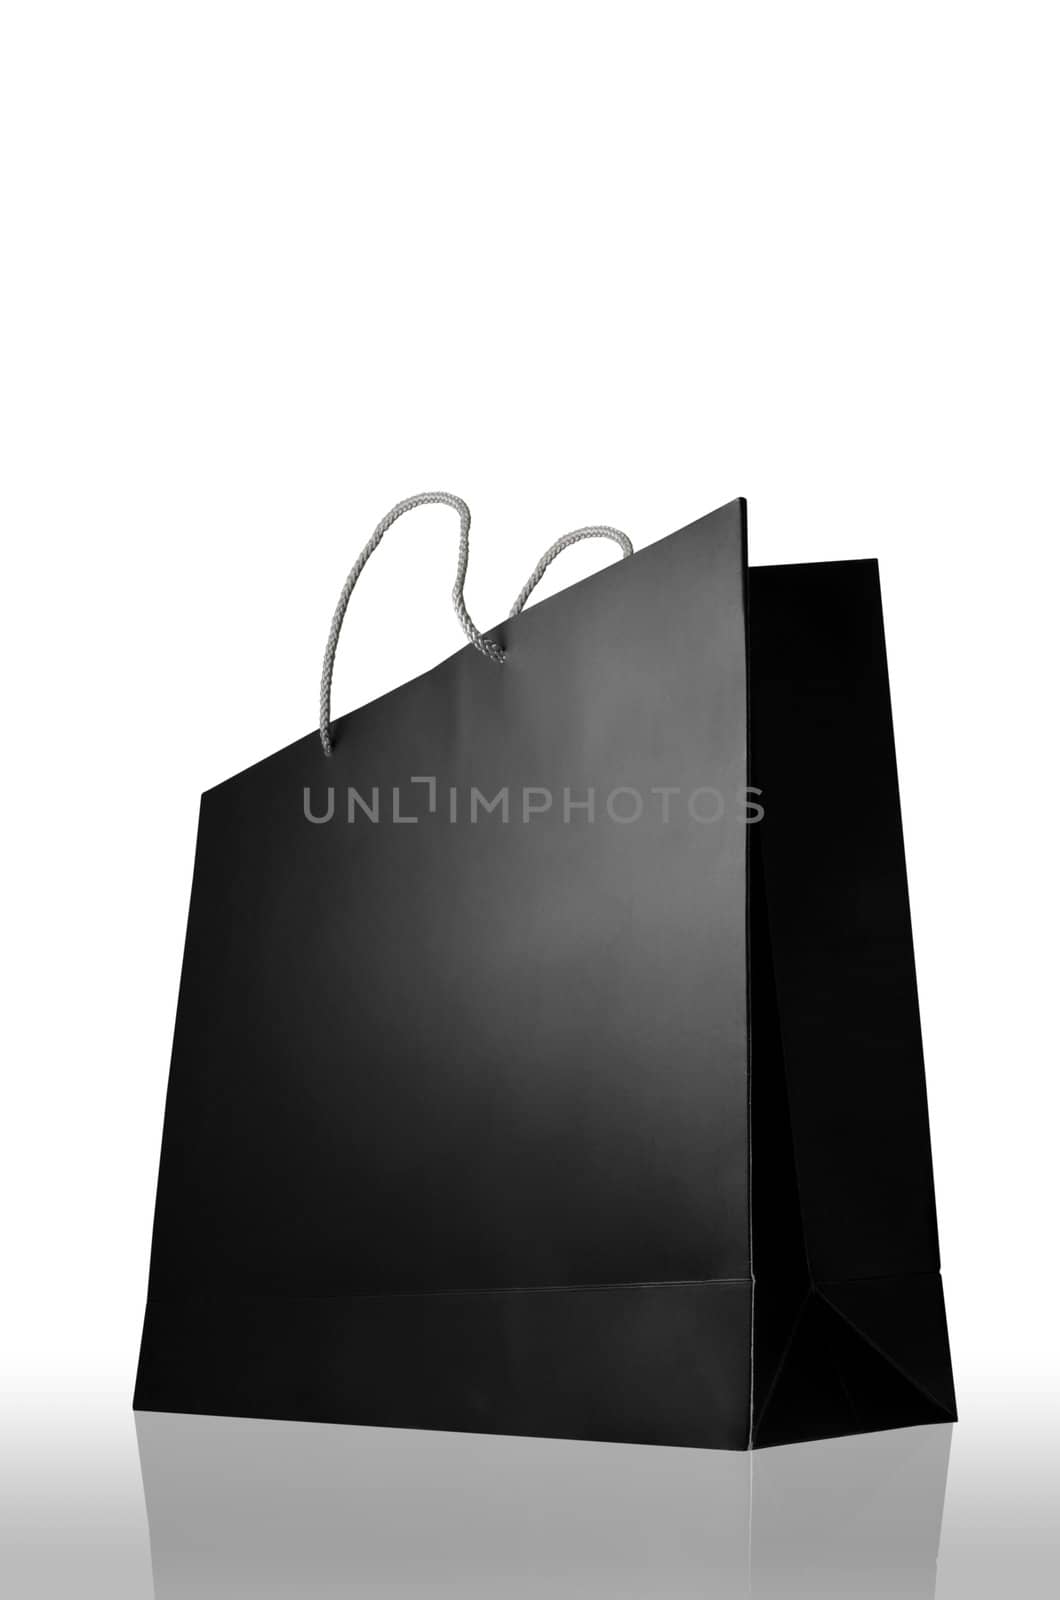 Glaze shopping bag isolated on white background